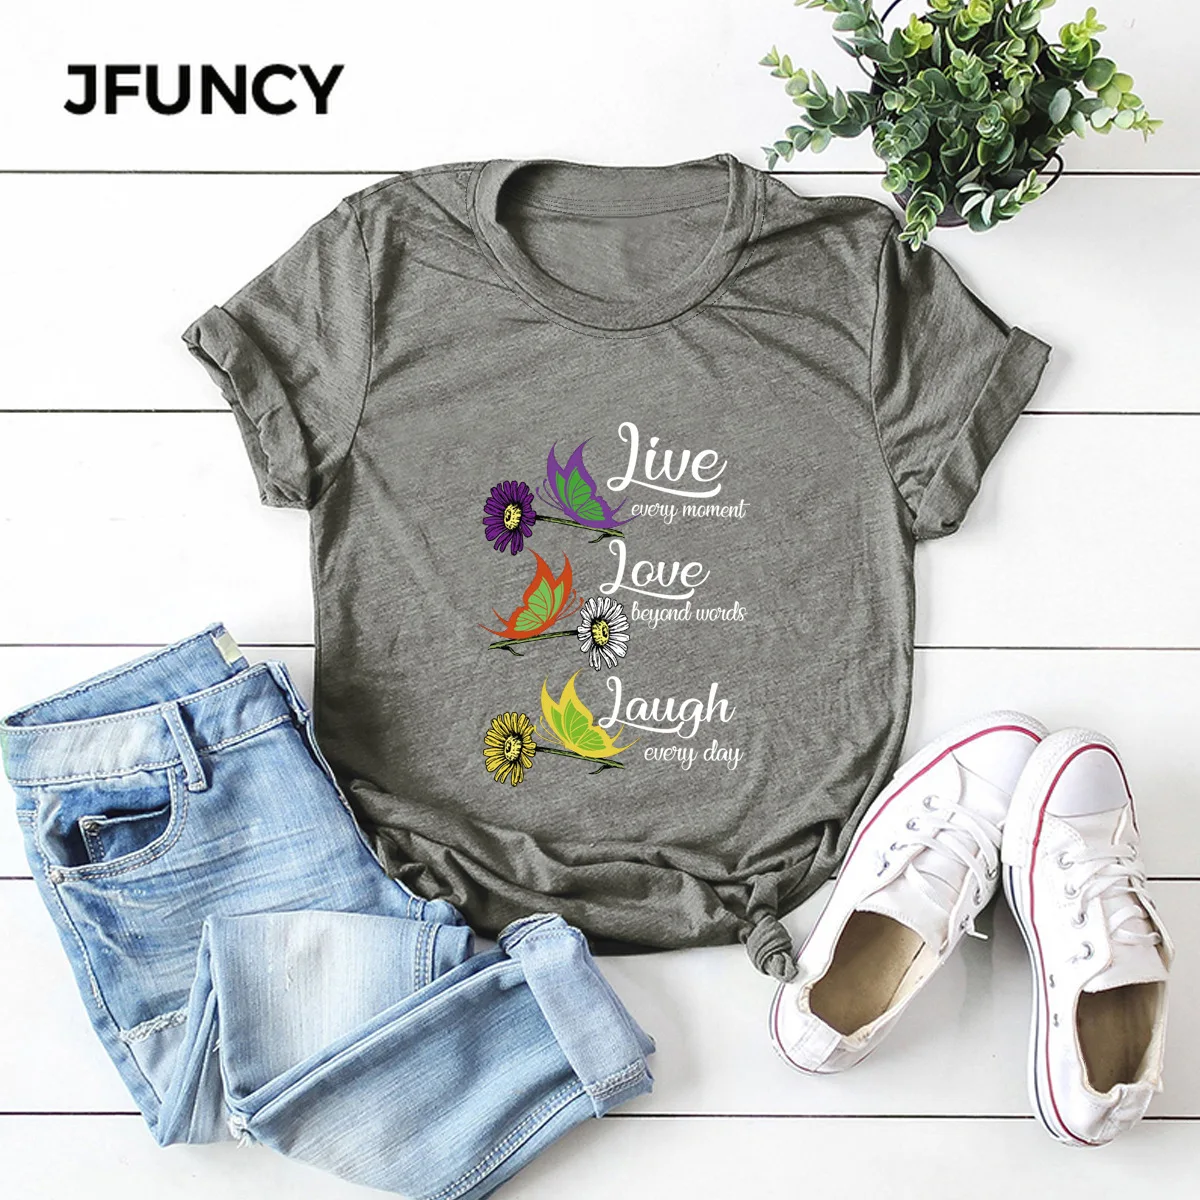 JFUNCY Sunflower, Daisy, Butterfly Graphic Tees Women Tops 100% Cotton Summer T-shirt  Short Sleeve Woman Shirts